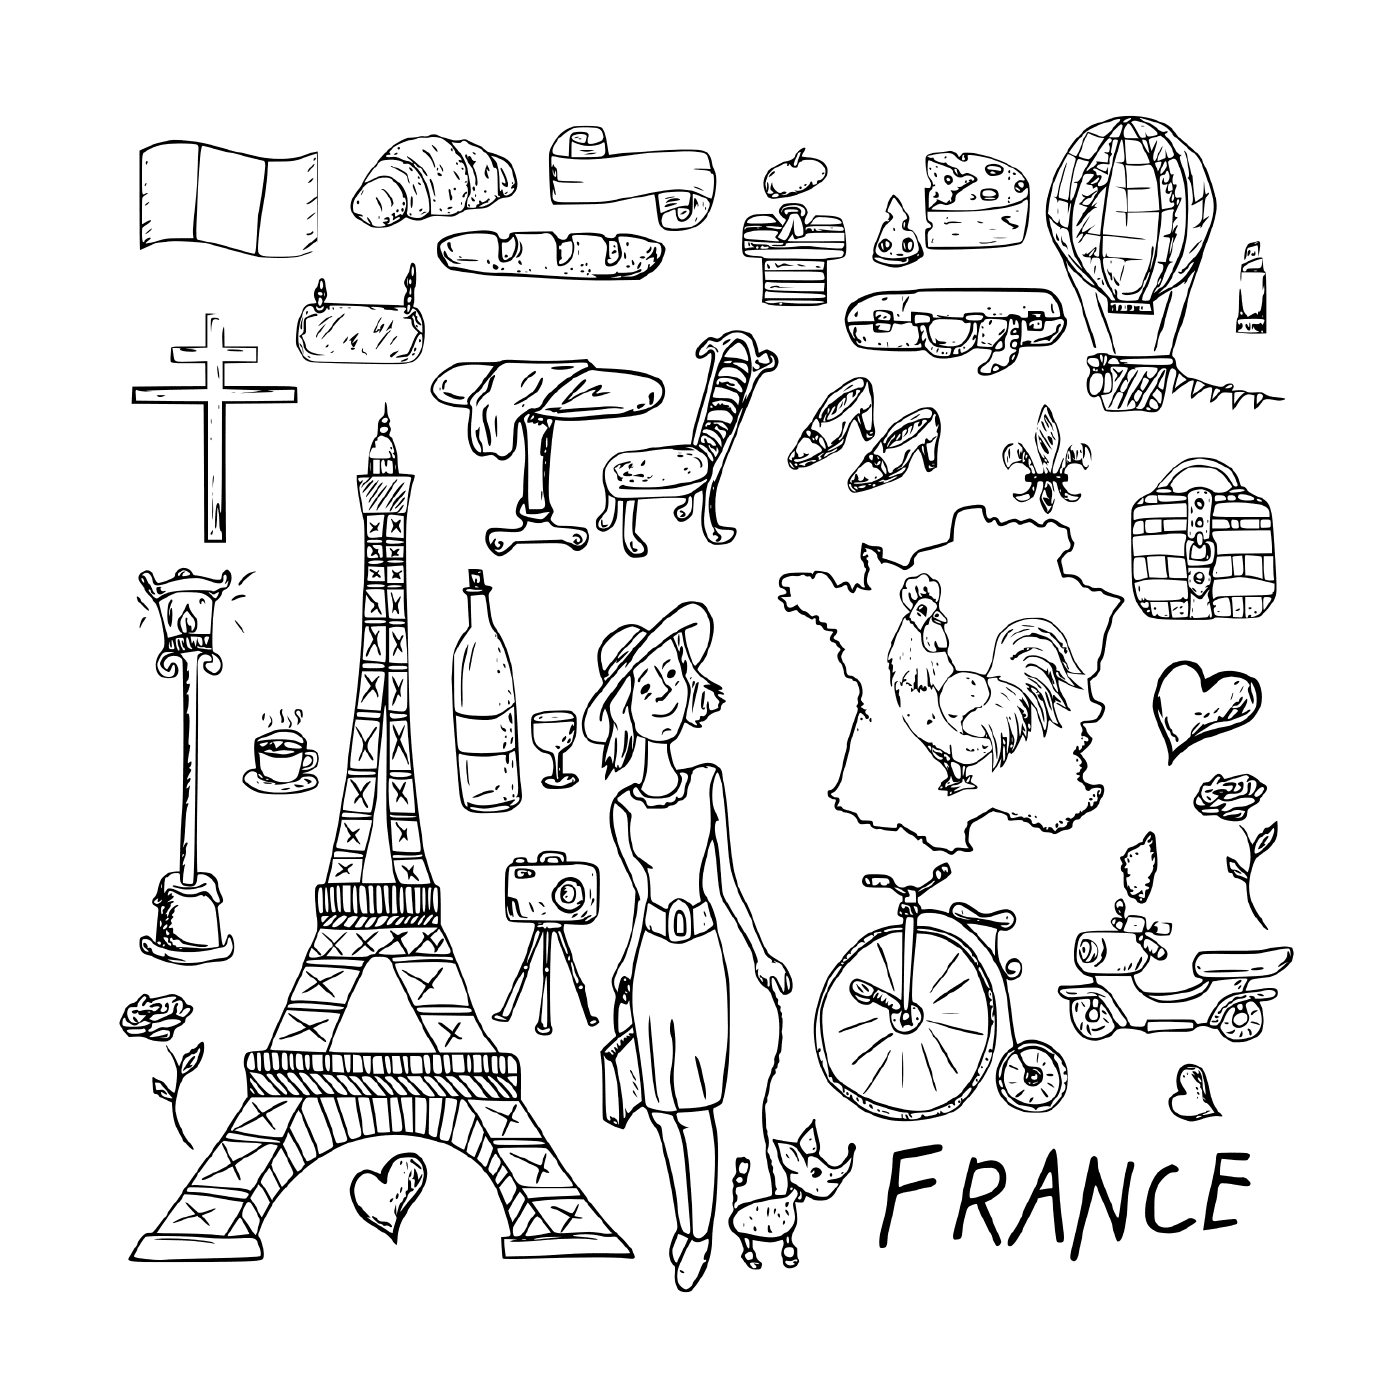  फ्रांस, आदर्श मंज़िल तक यात्रा 